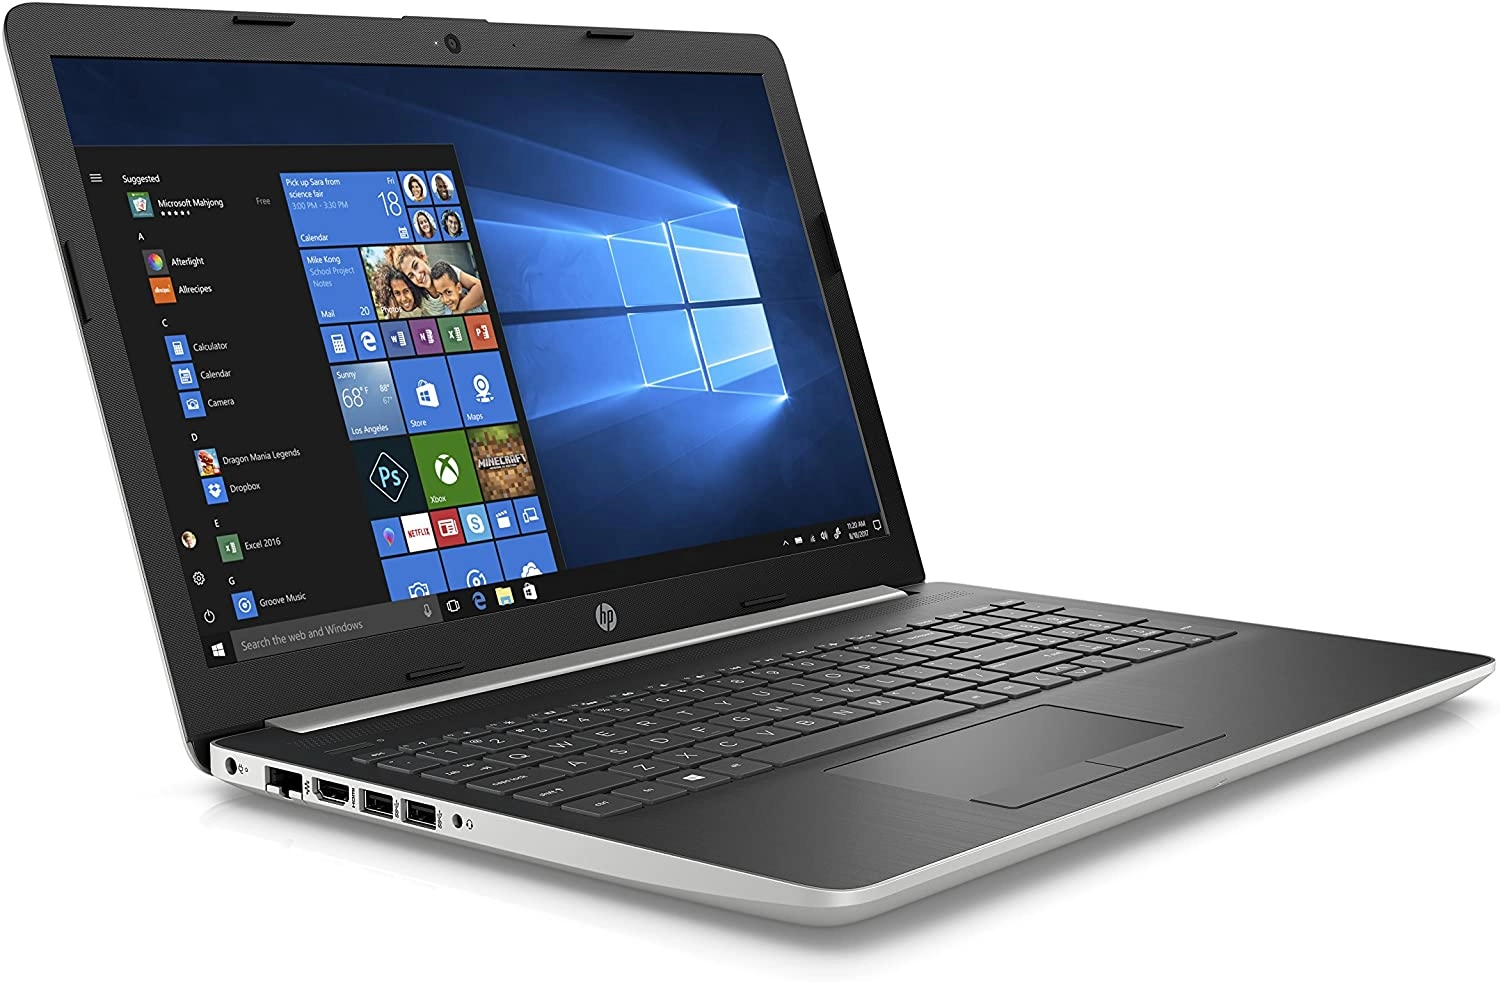 HP Notebook - 15-da0049ns laptop image